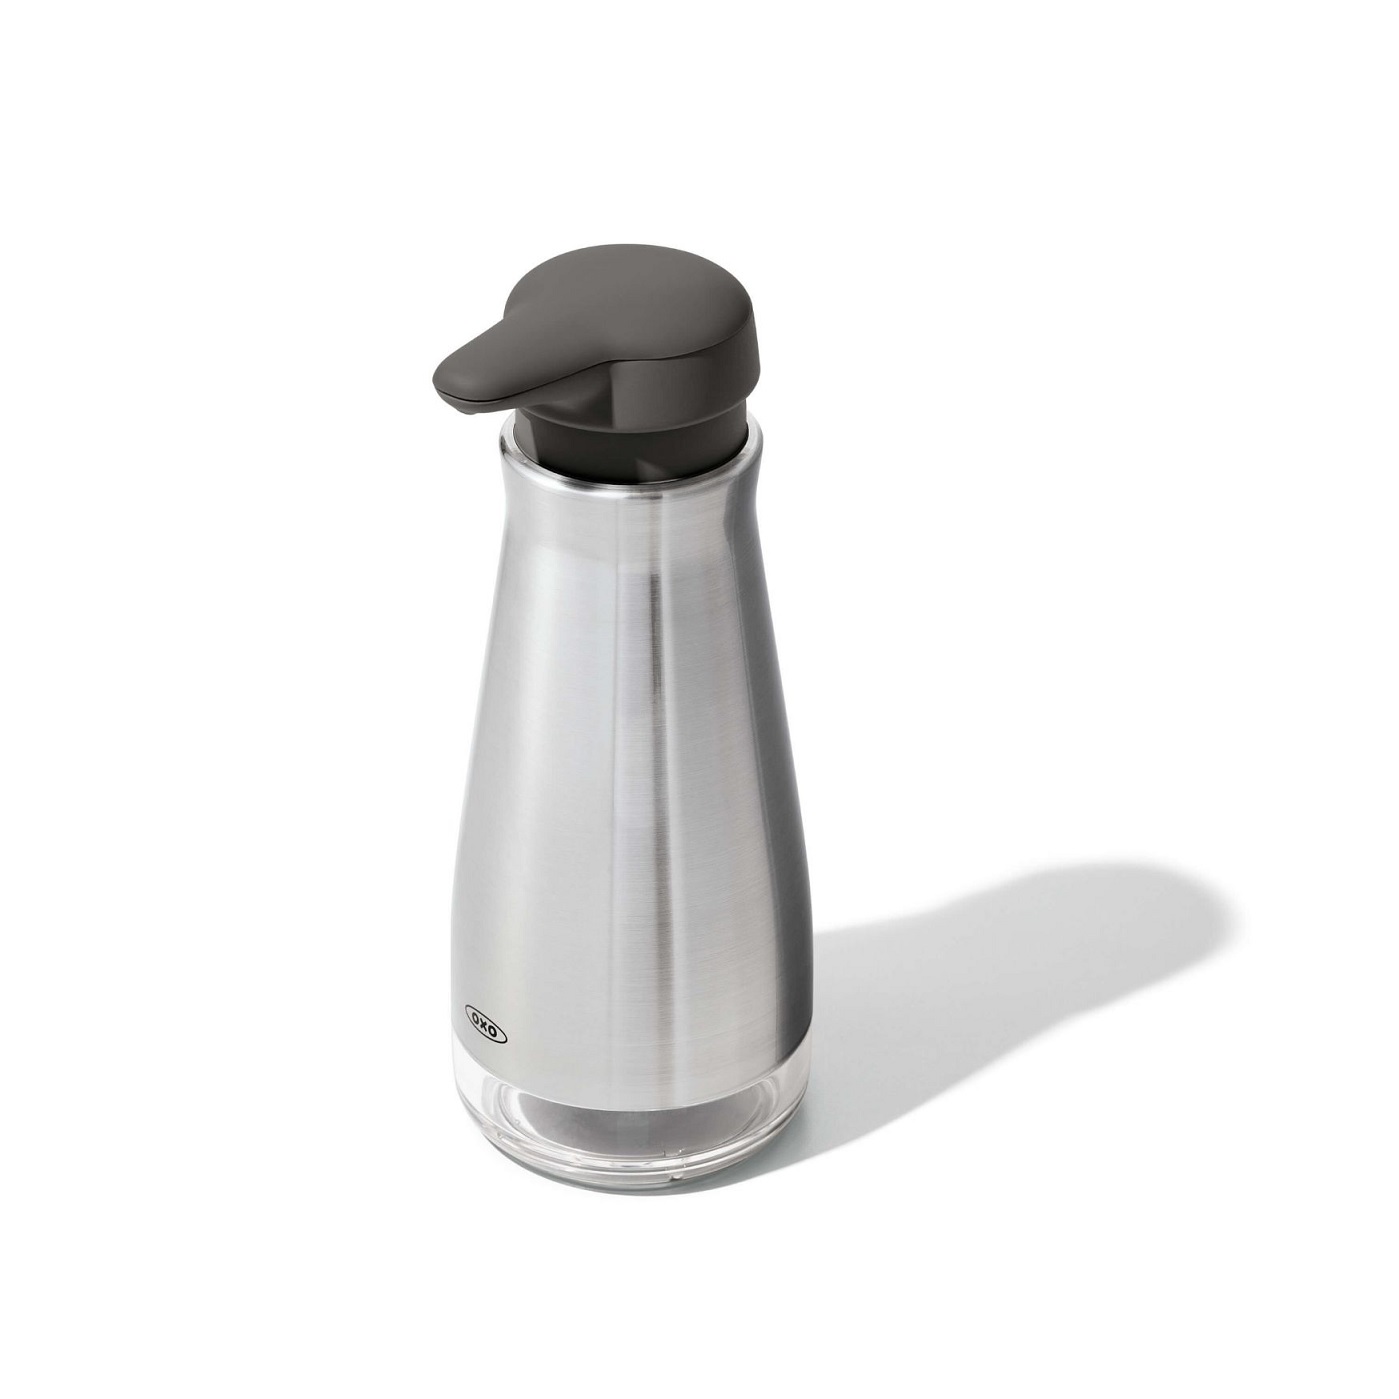  OXO Good Grips Glass Sugar Dispenser & Salt and Pepper